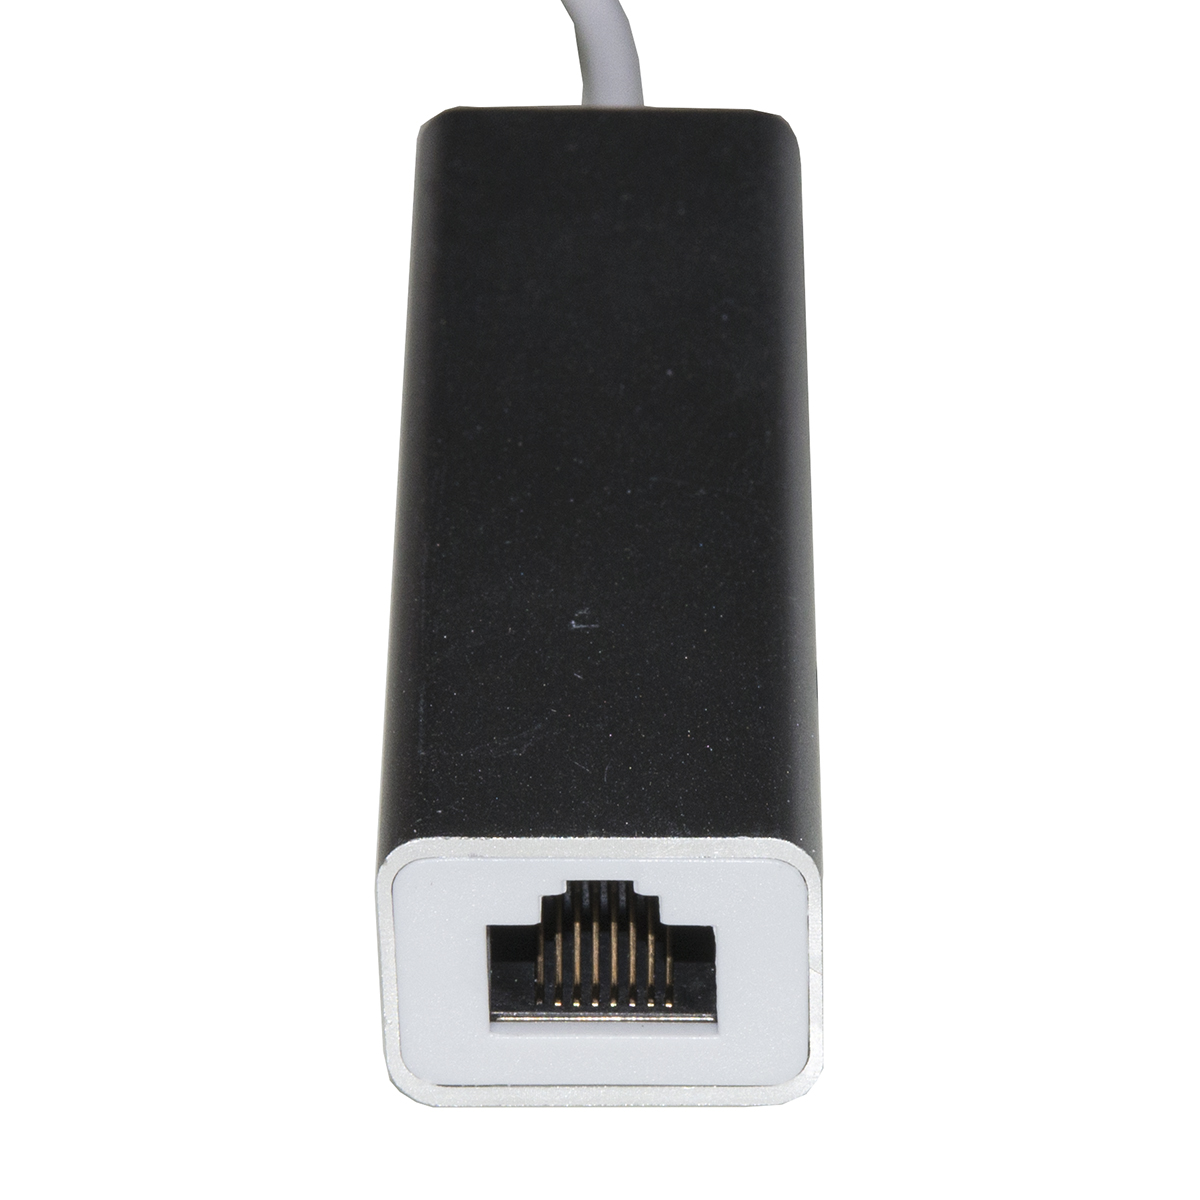 ADATTATORE USB-C MASCHIO CON PRESA RETE RJ45 10/100 + HUB 3 PORTE USB 2.0  online, Net-Store